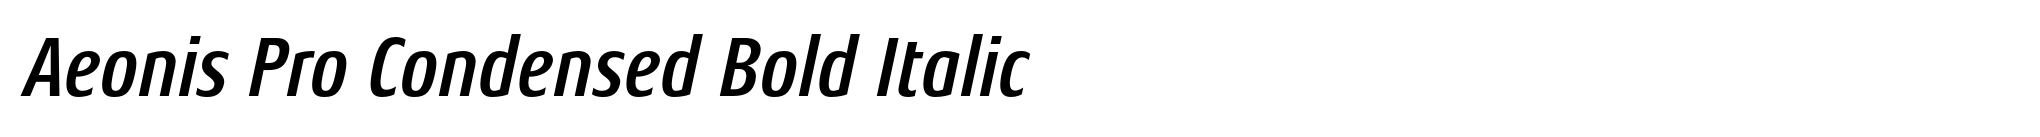 Aeonis Pro Condensed Bold Italic image